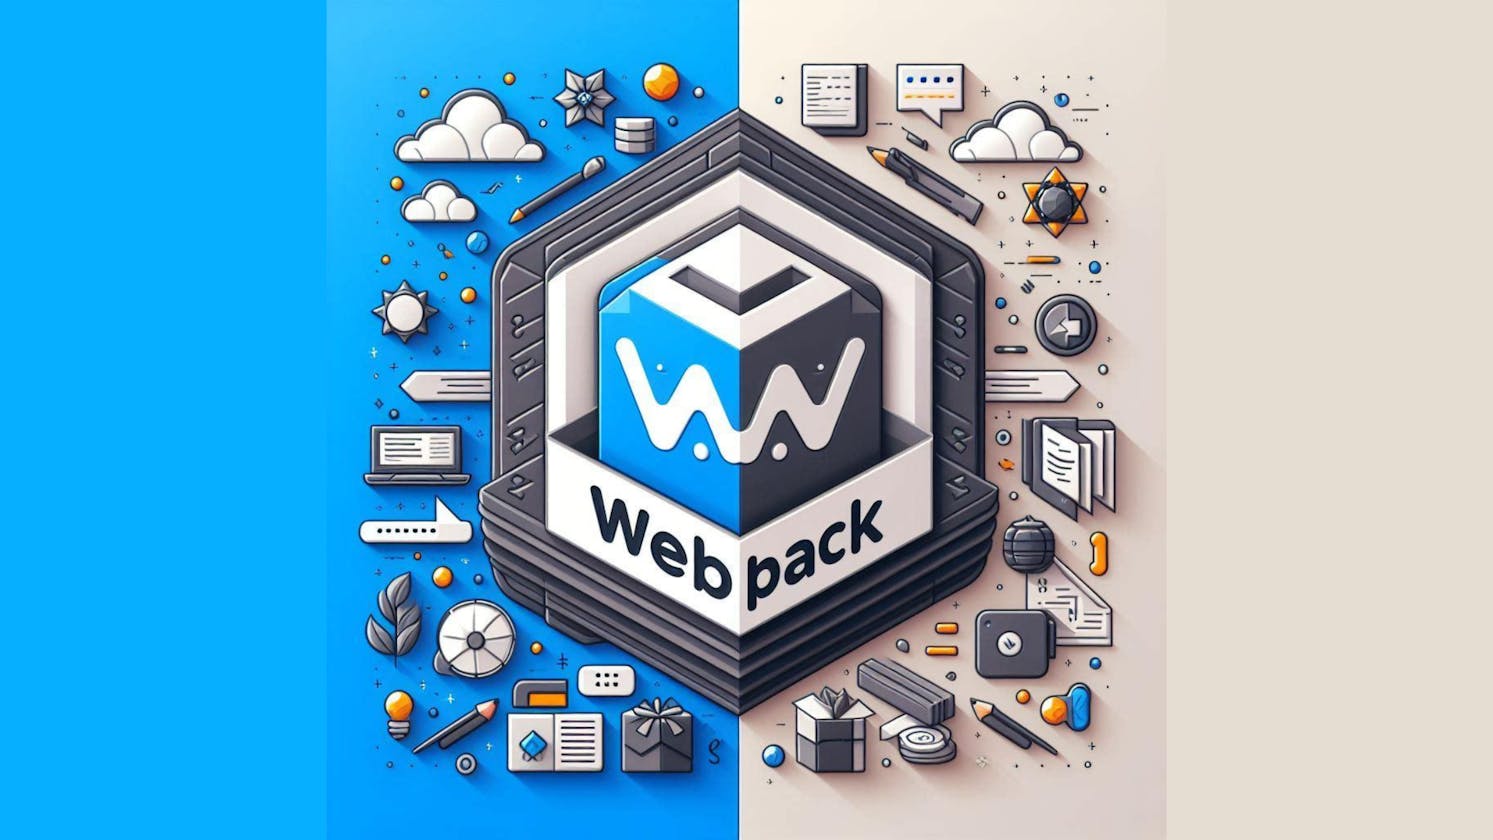 Webpack Explained